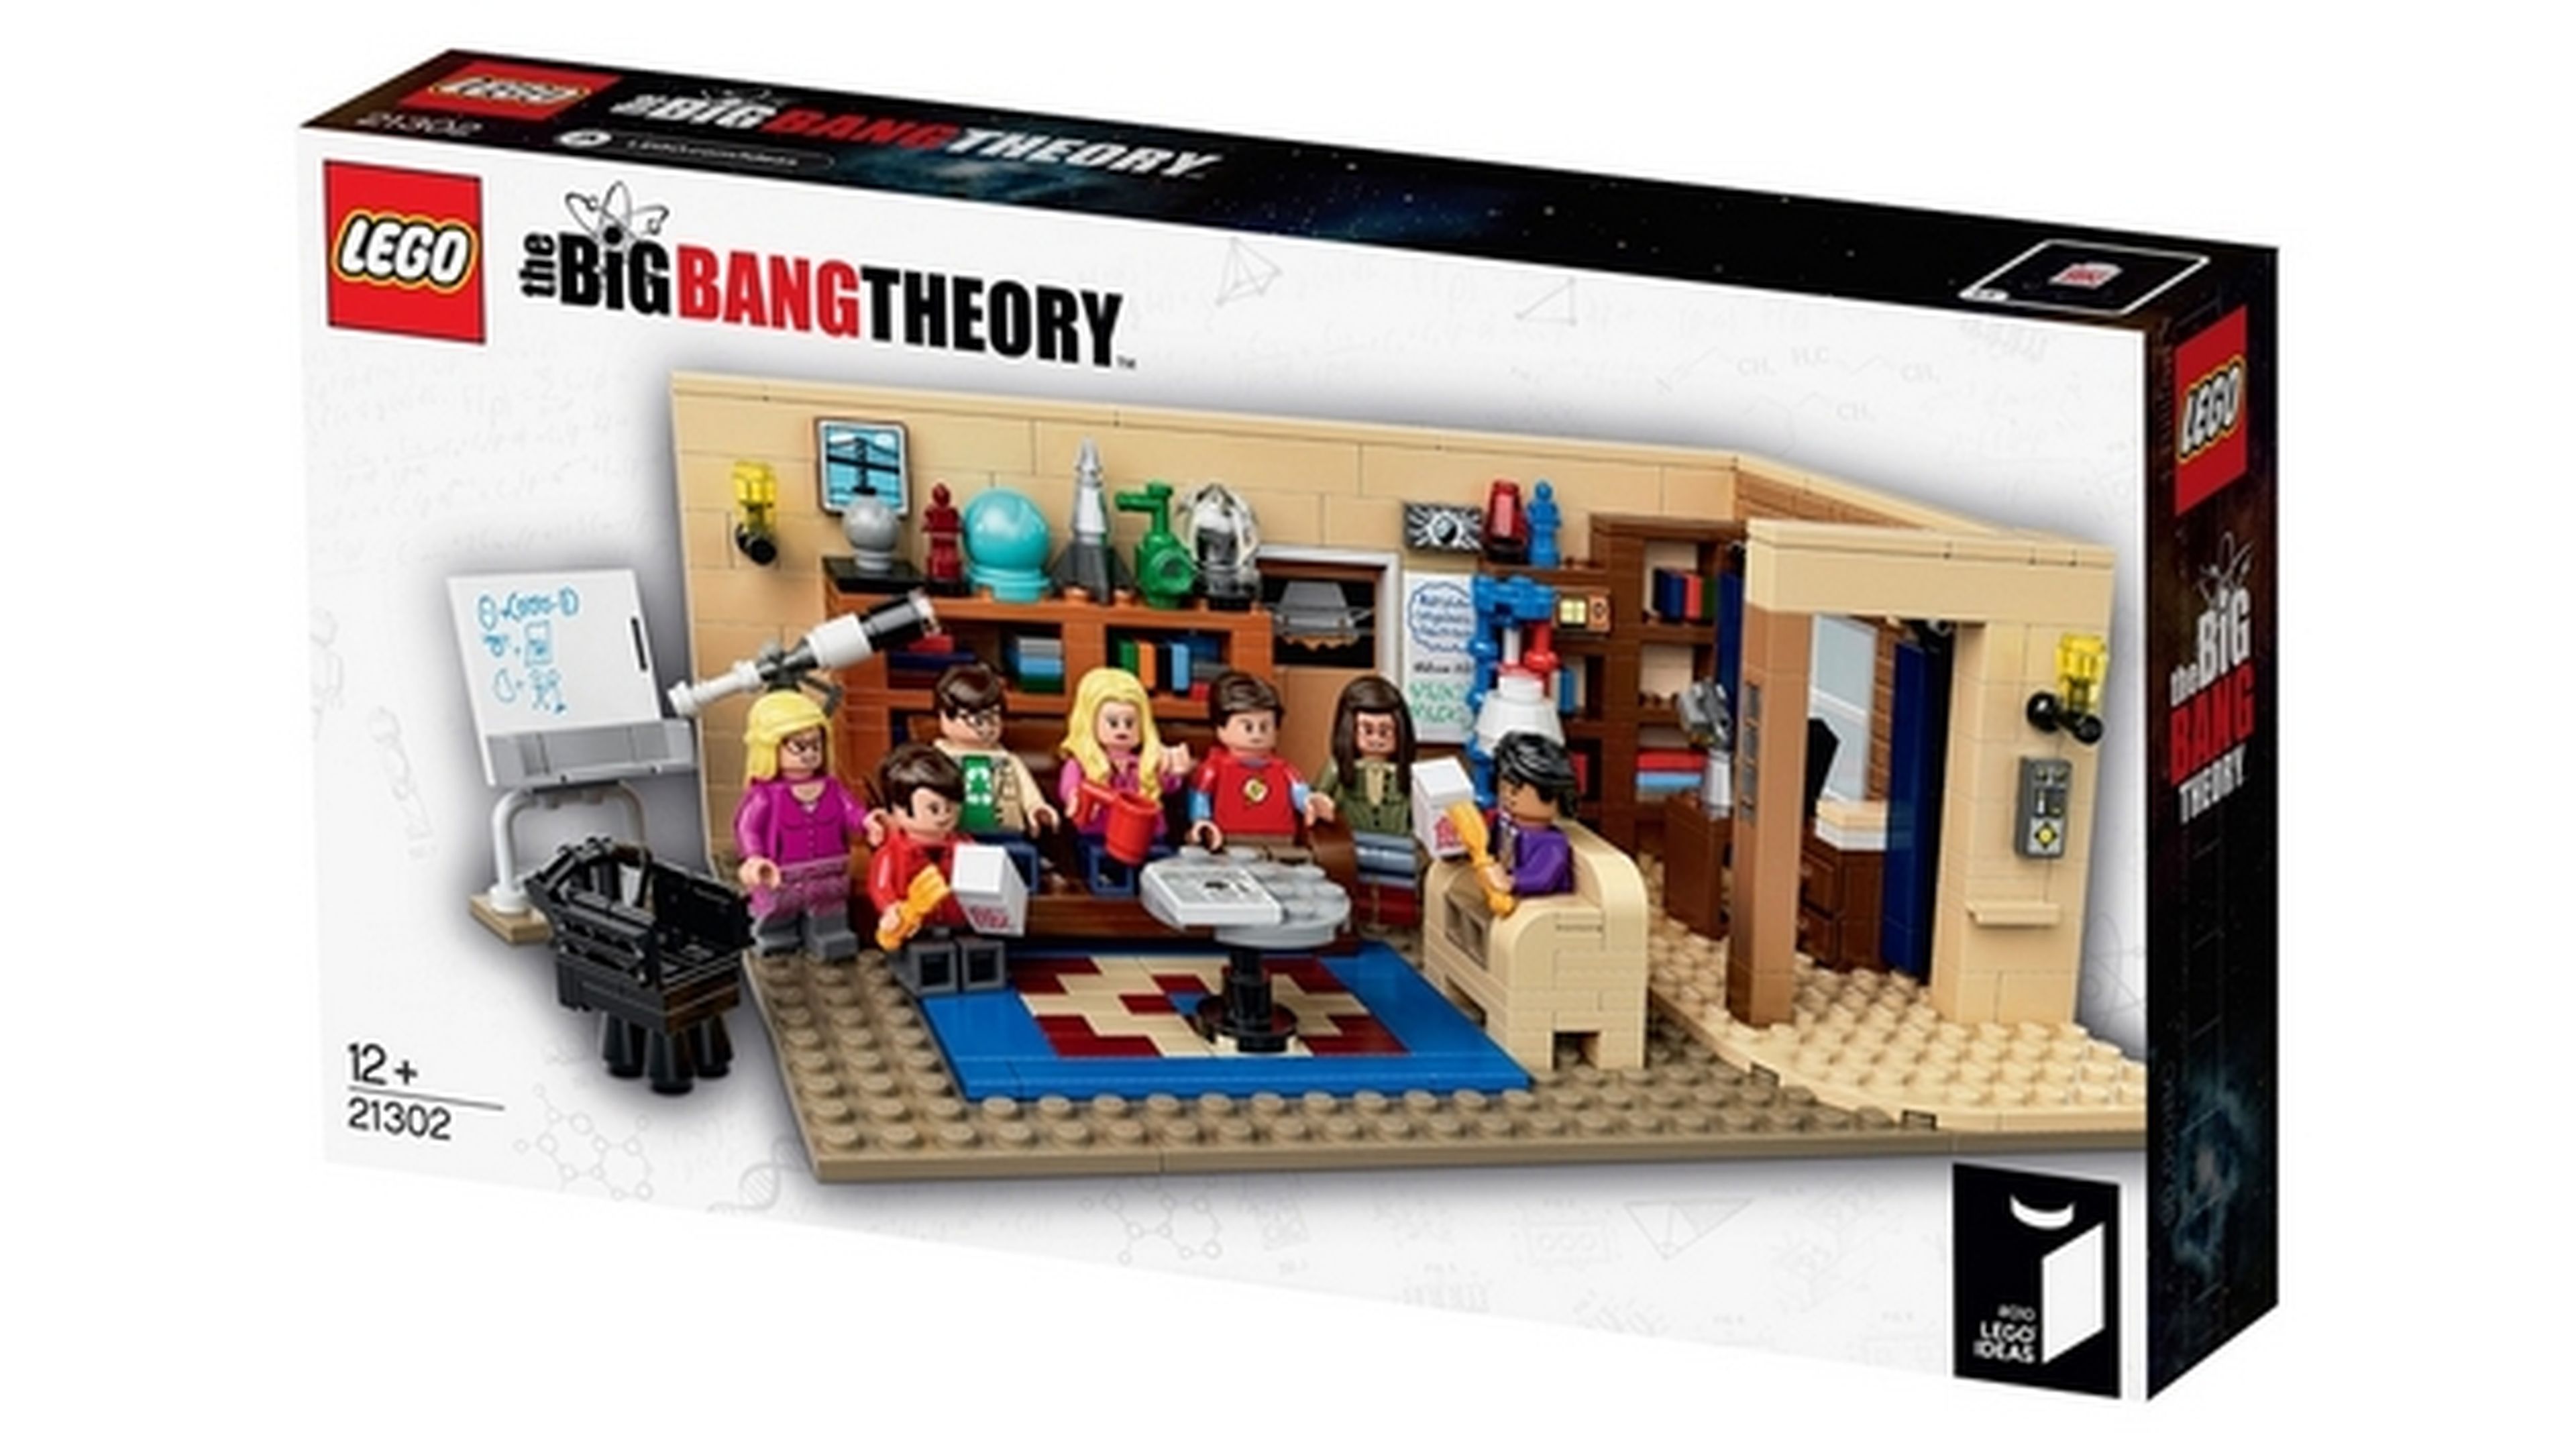 Primeras fotos de la caja y contenido del set de Lego The Big Bang Theory.